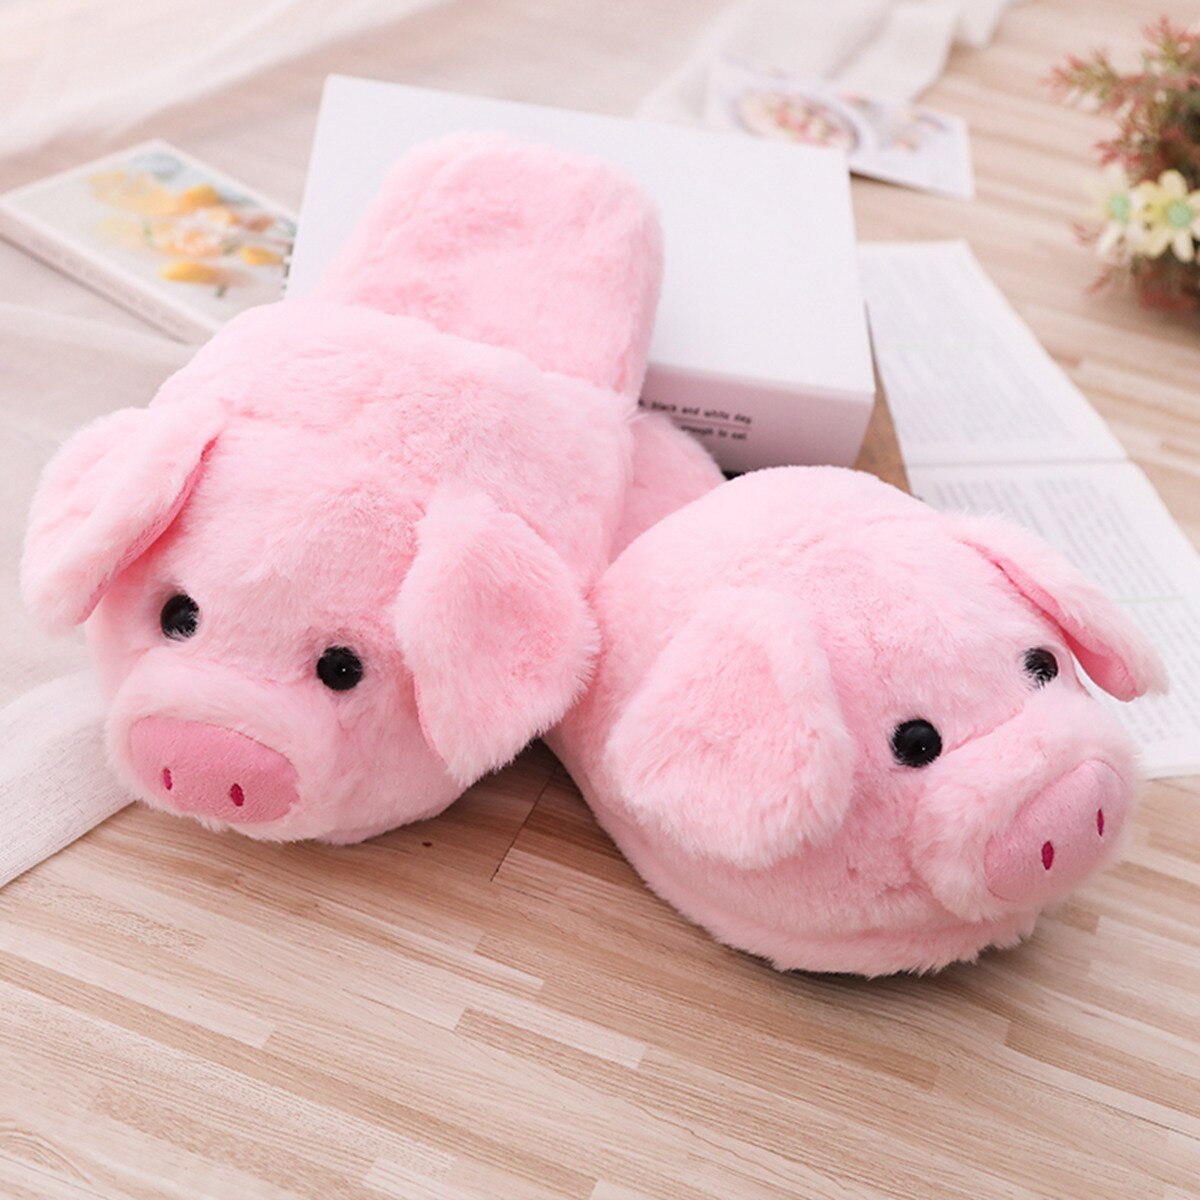 Snugglify - Cosy Piggy Plush Slippers